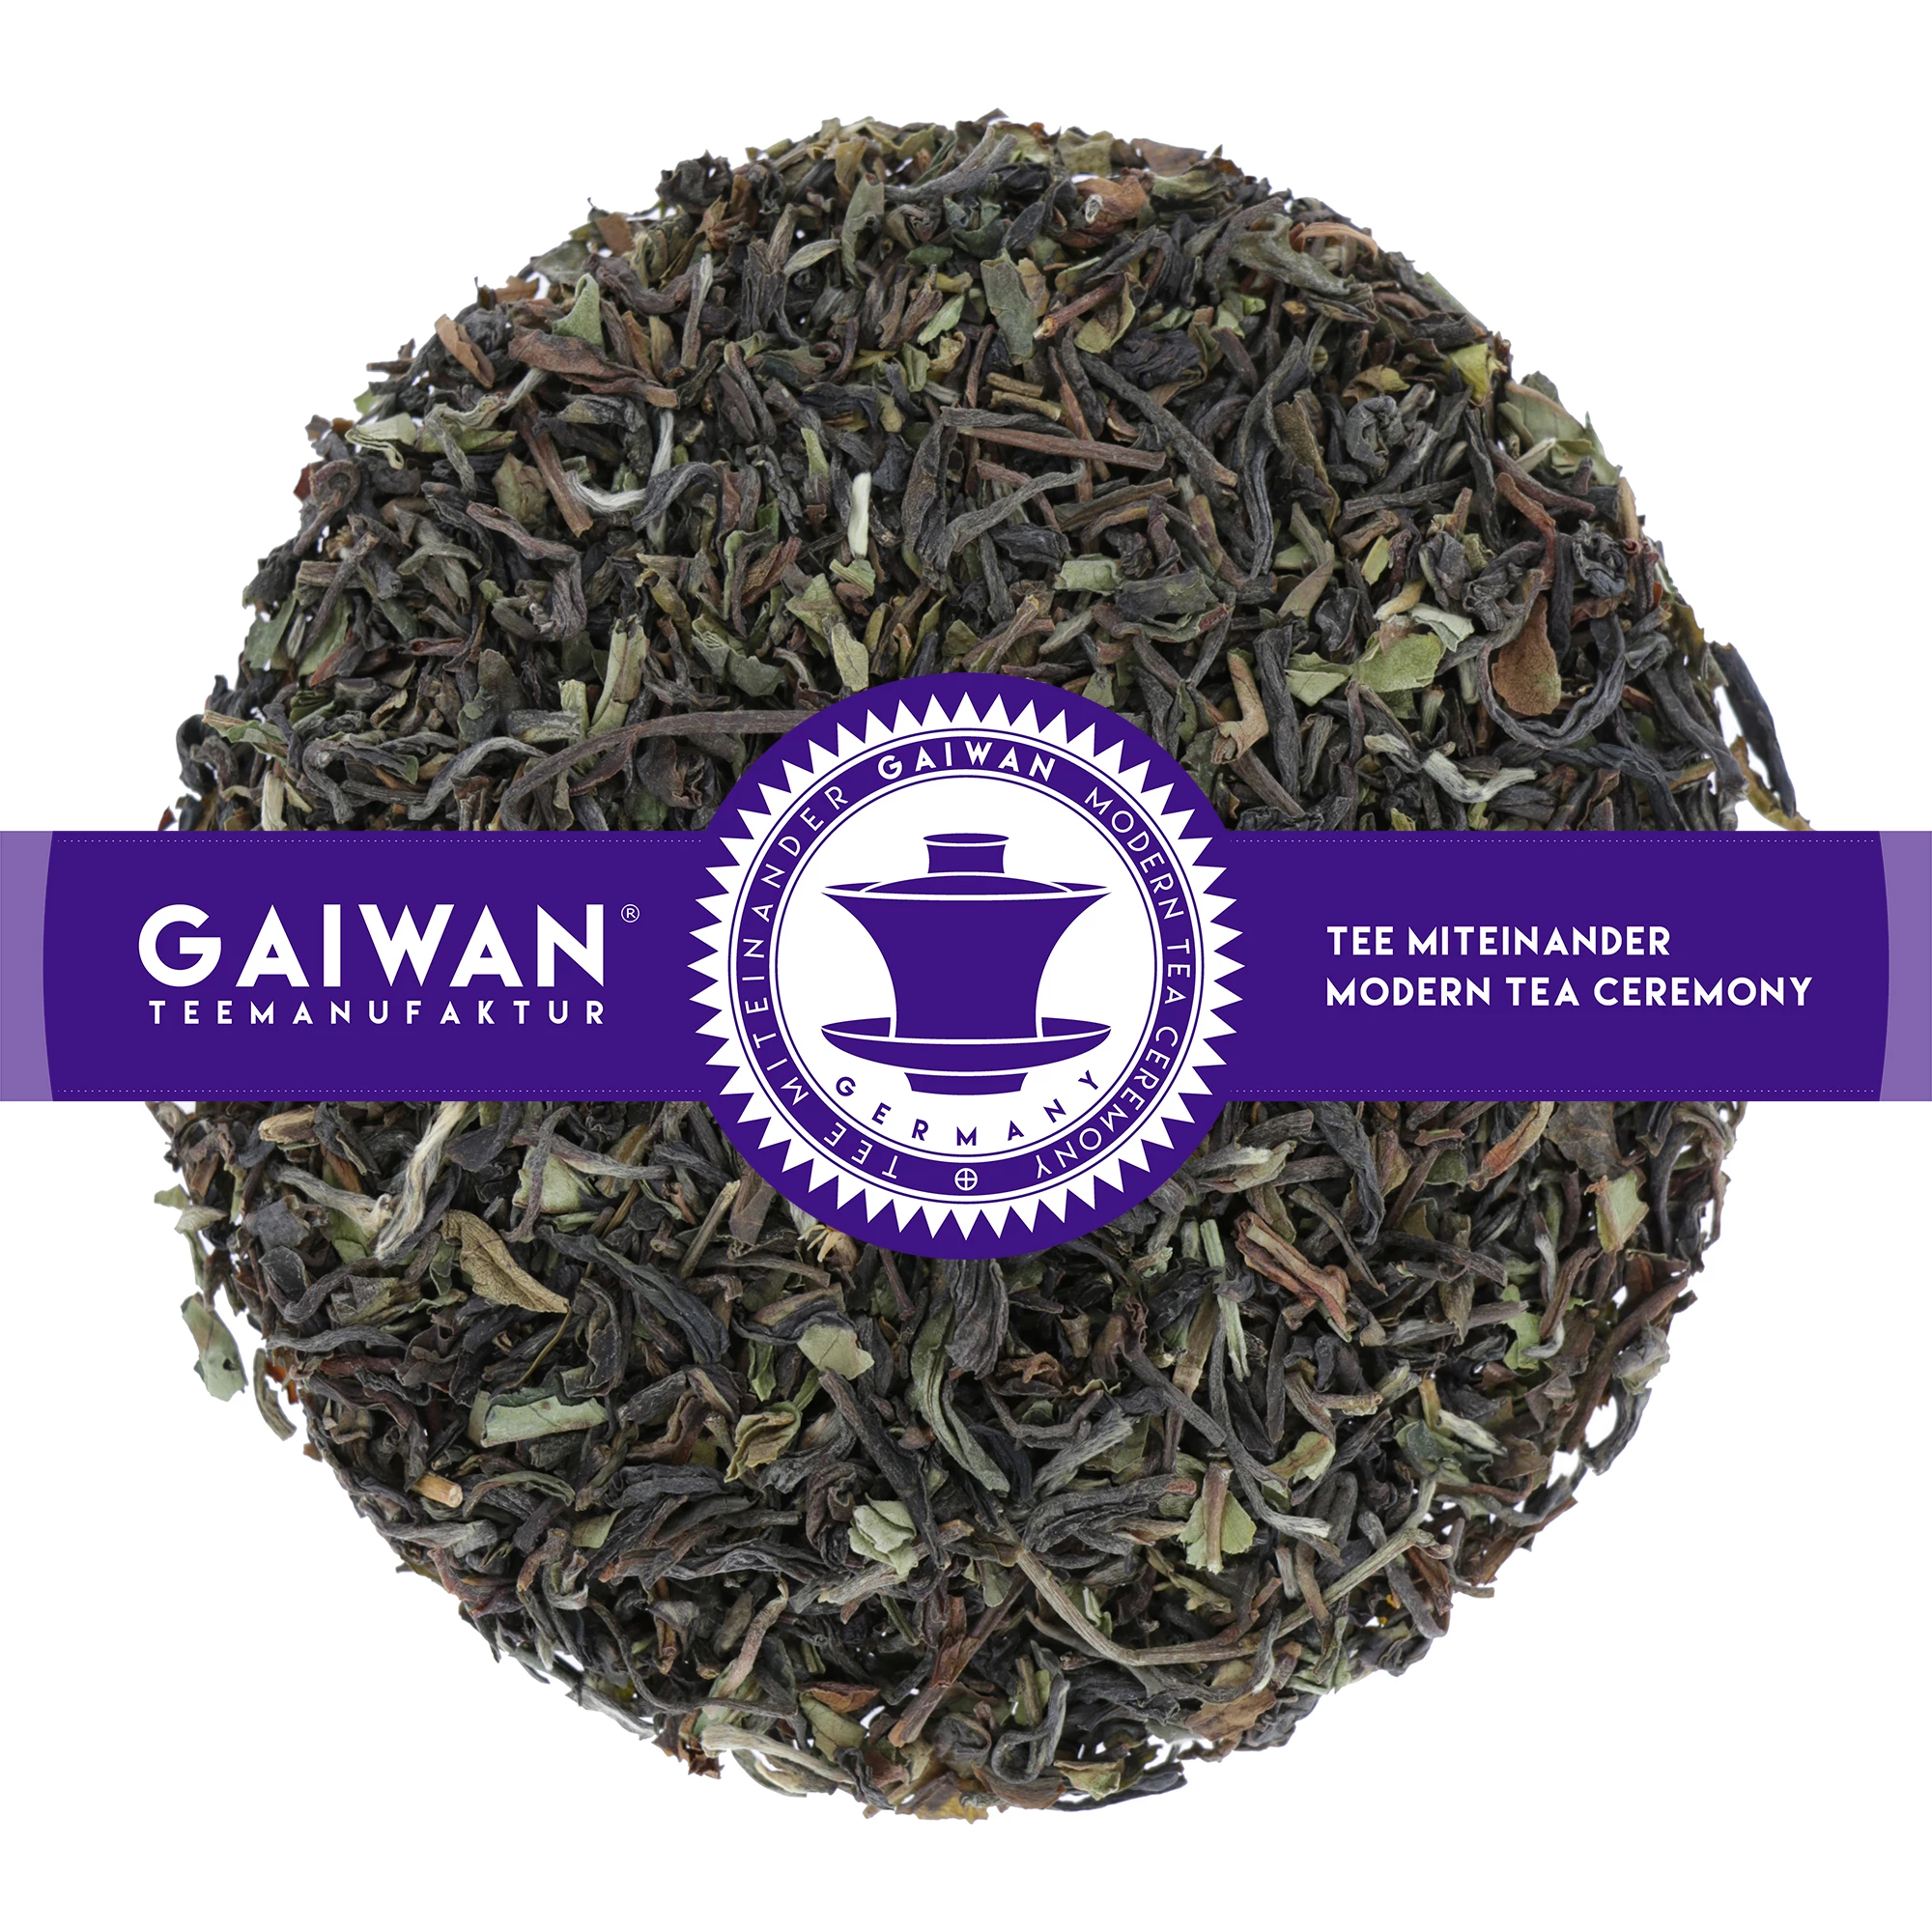 Loose leaf black tea "Darjeeling China Seed TGFOP"  - GAIWAN® Tea No. 1159